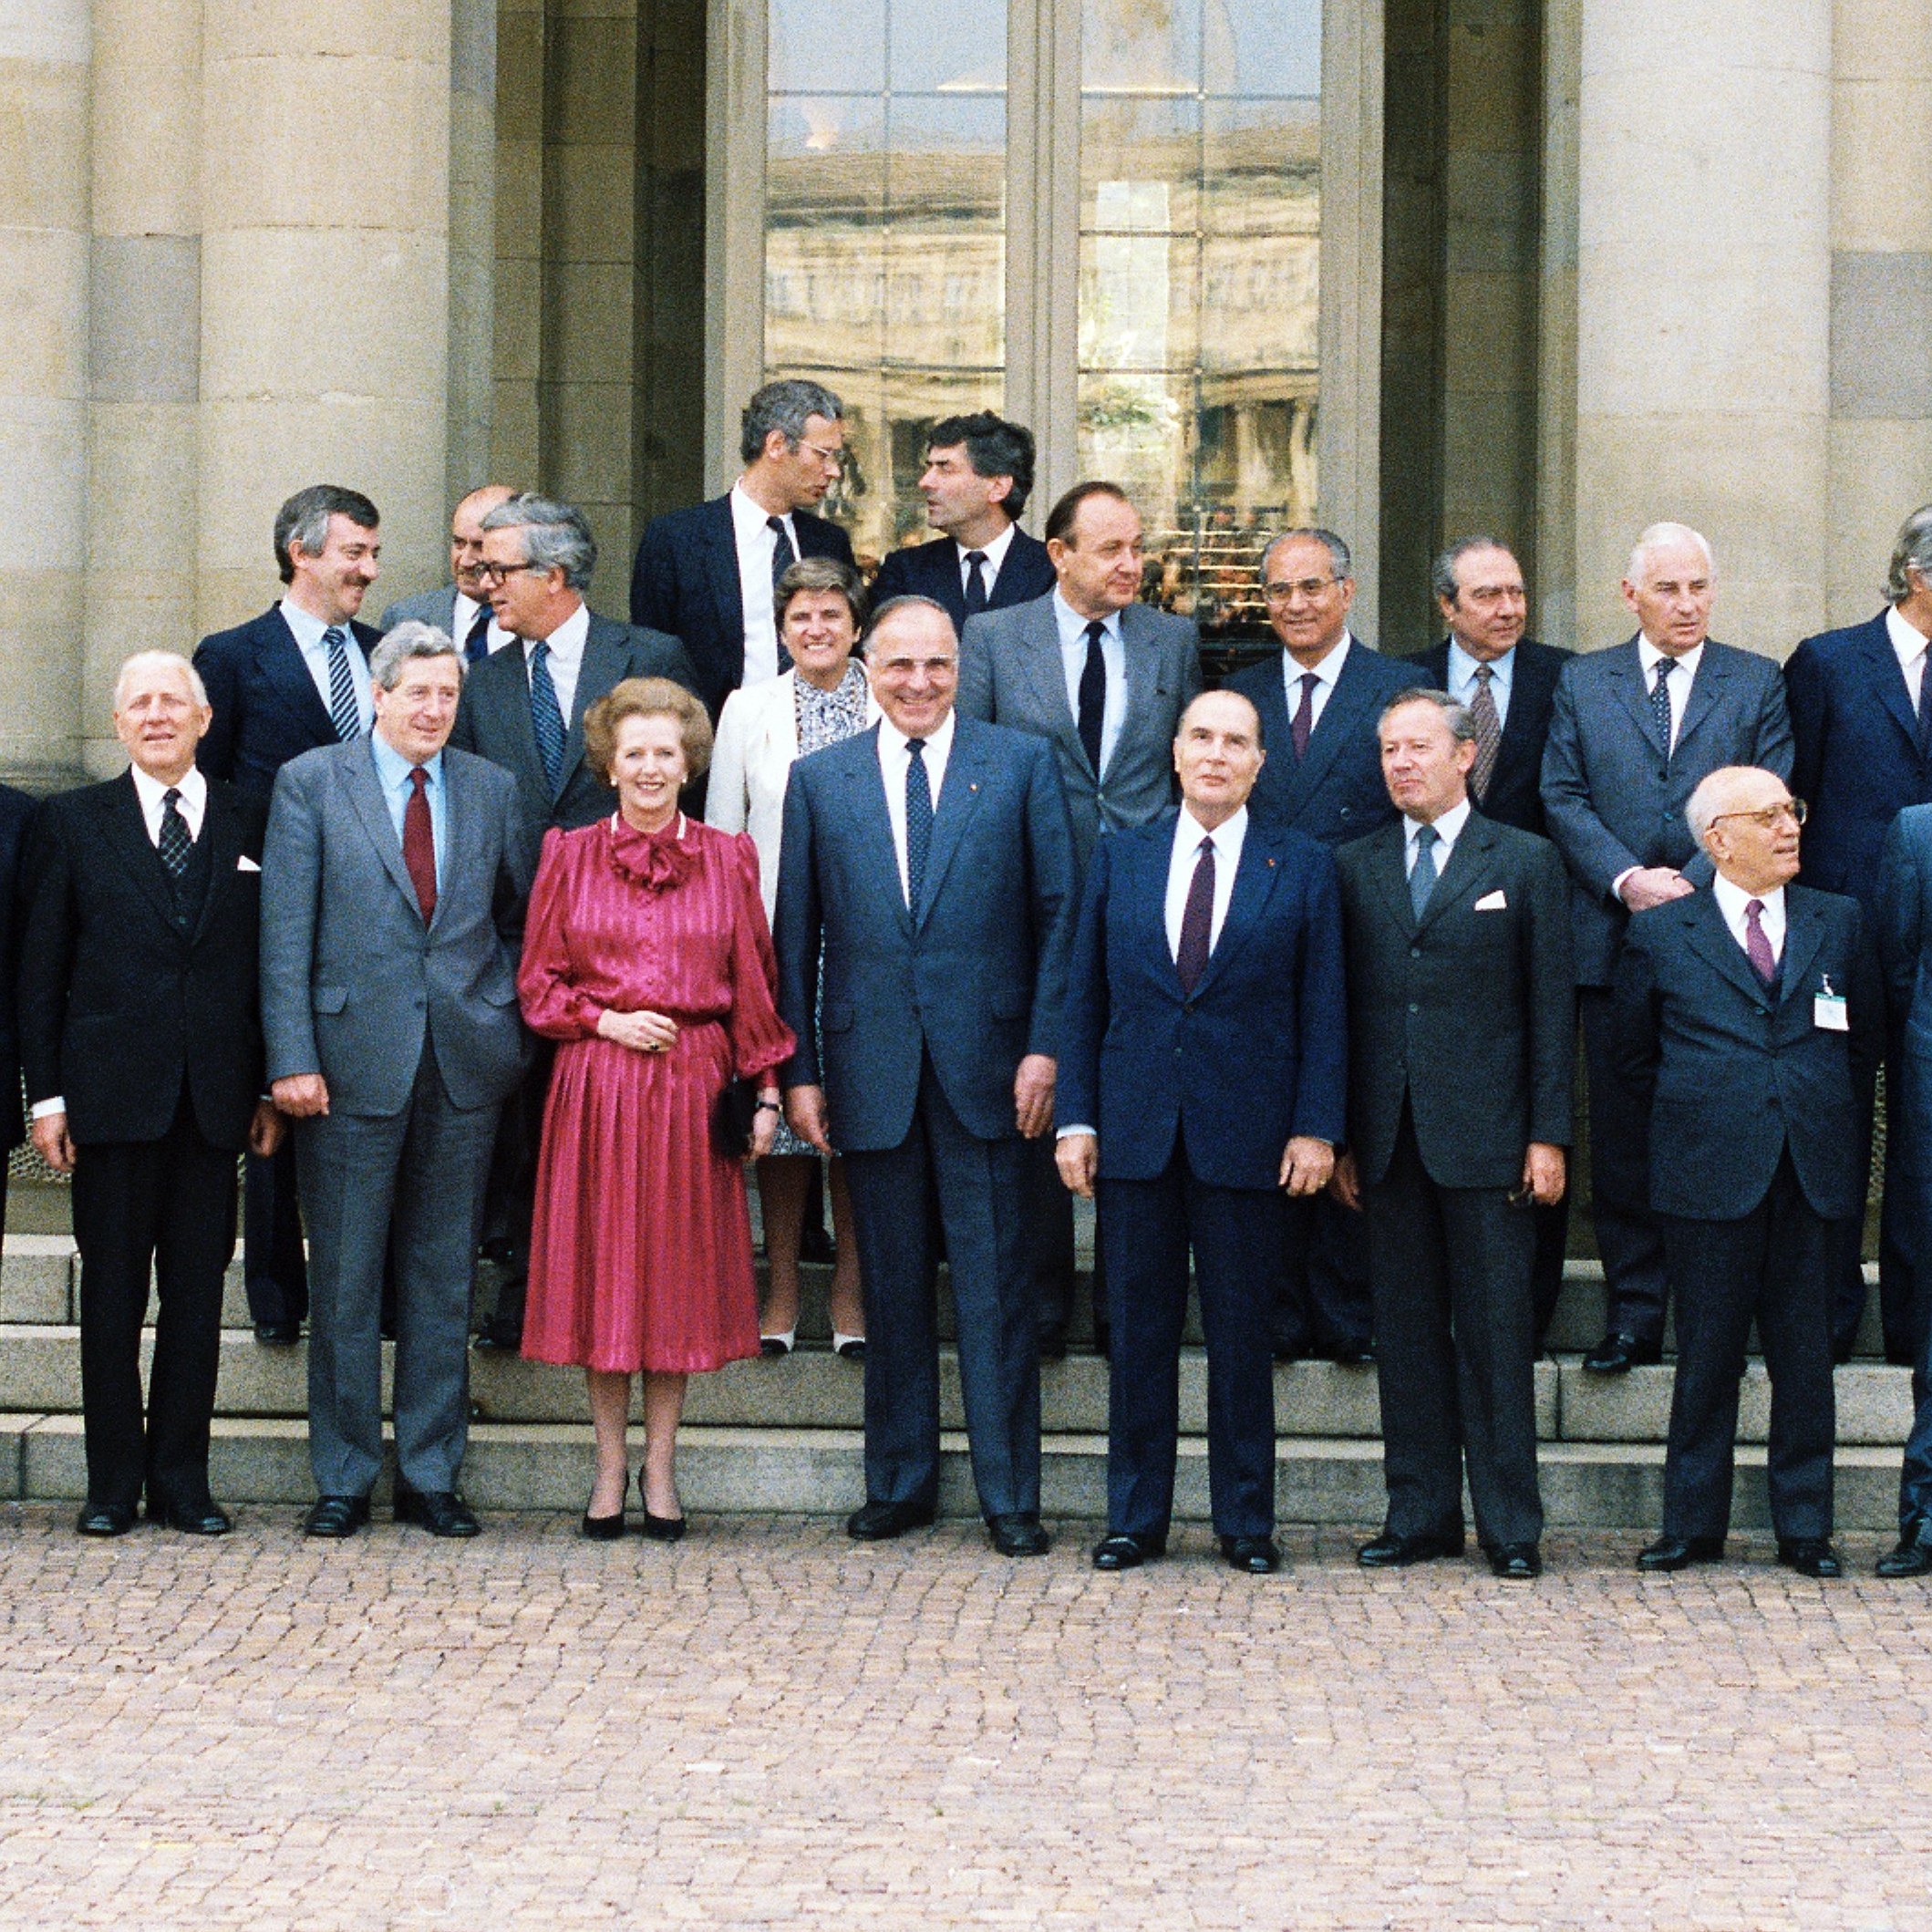 Aufnahme von den Staats- und Regierungschefs und Außenminister des Europäischen Rates